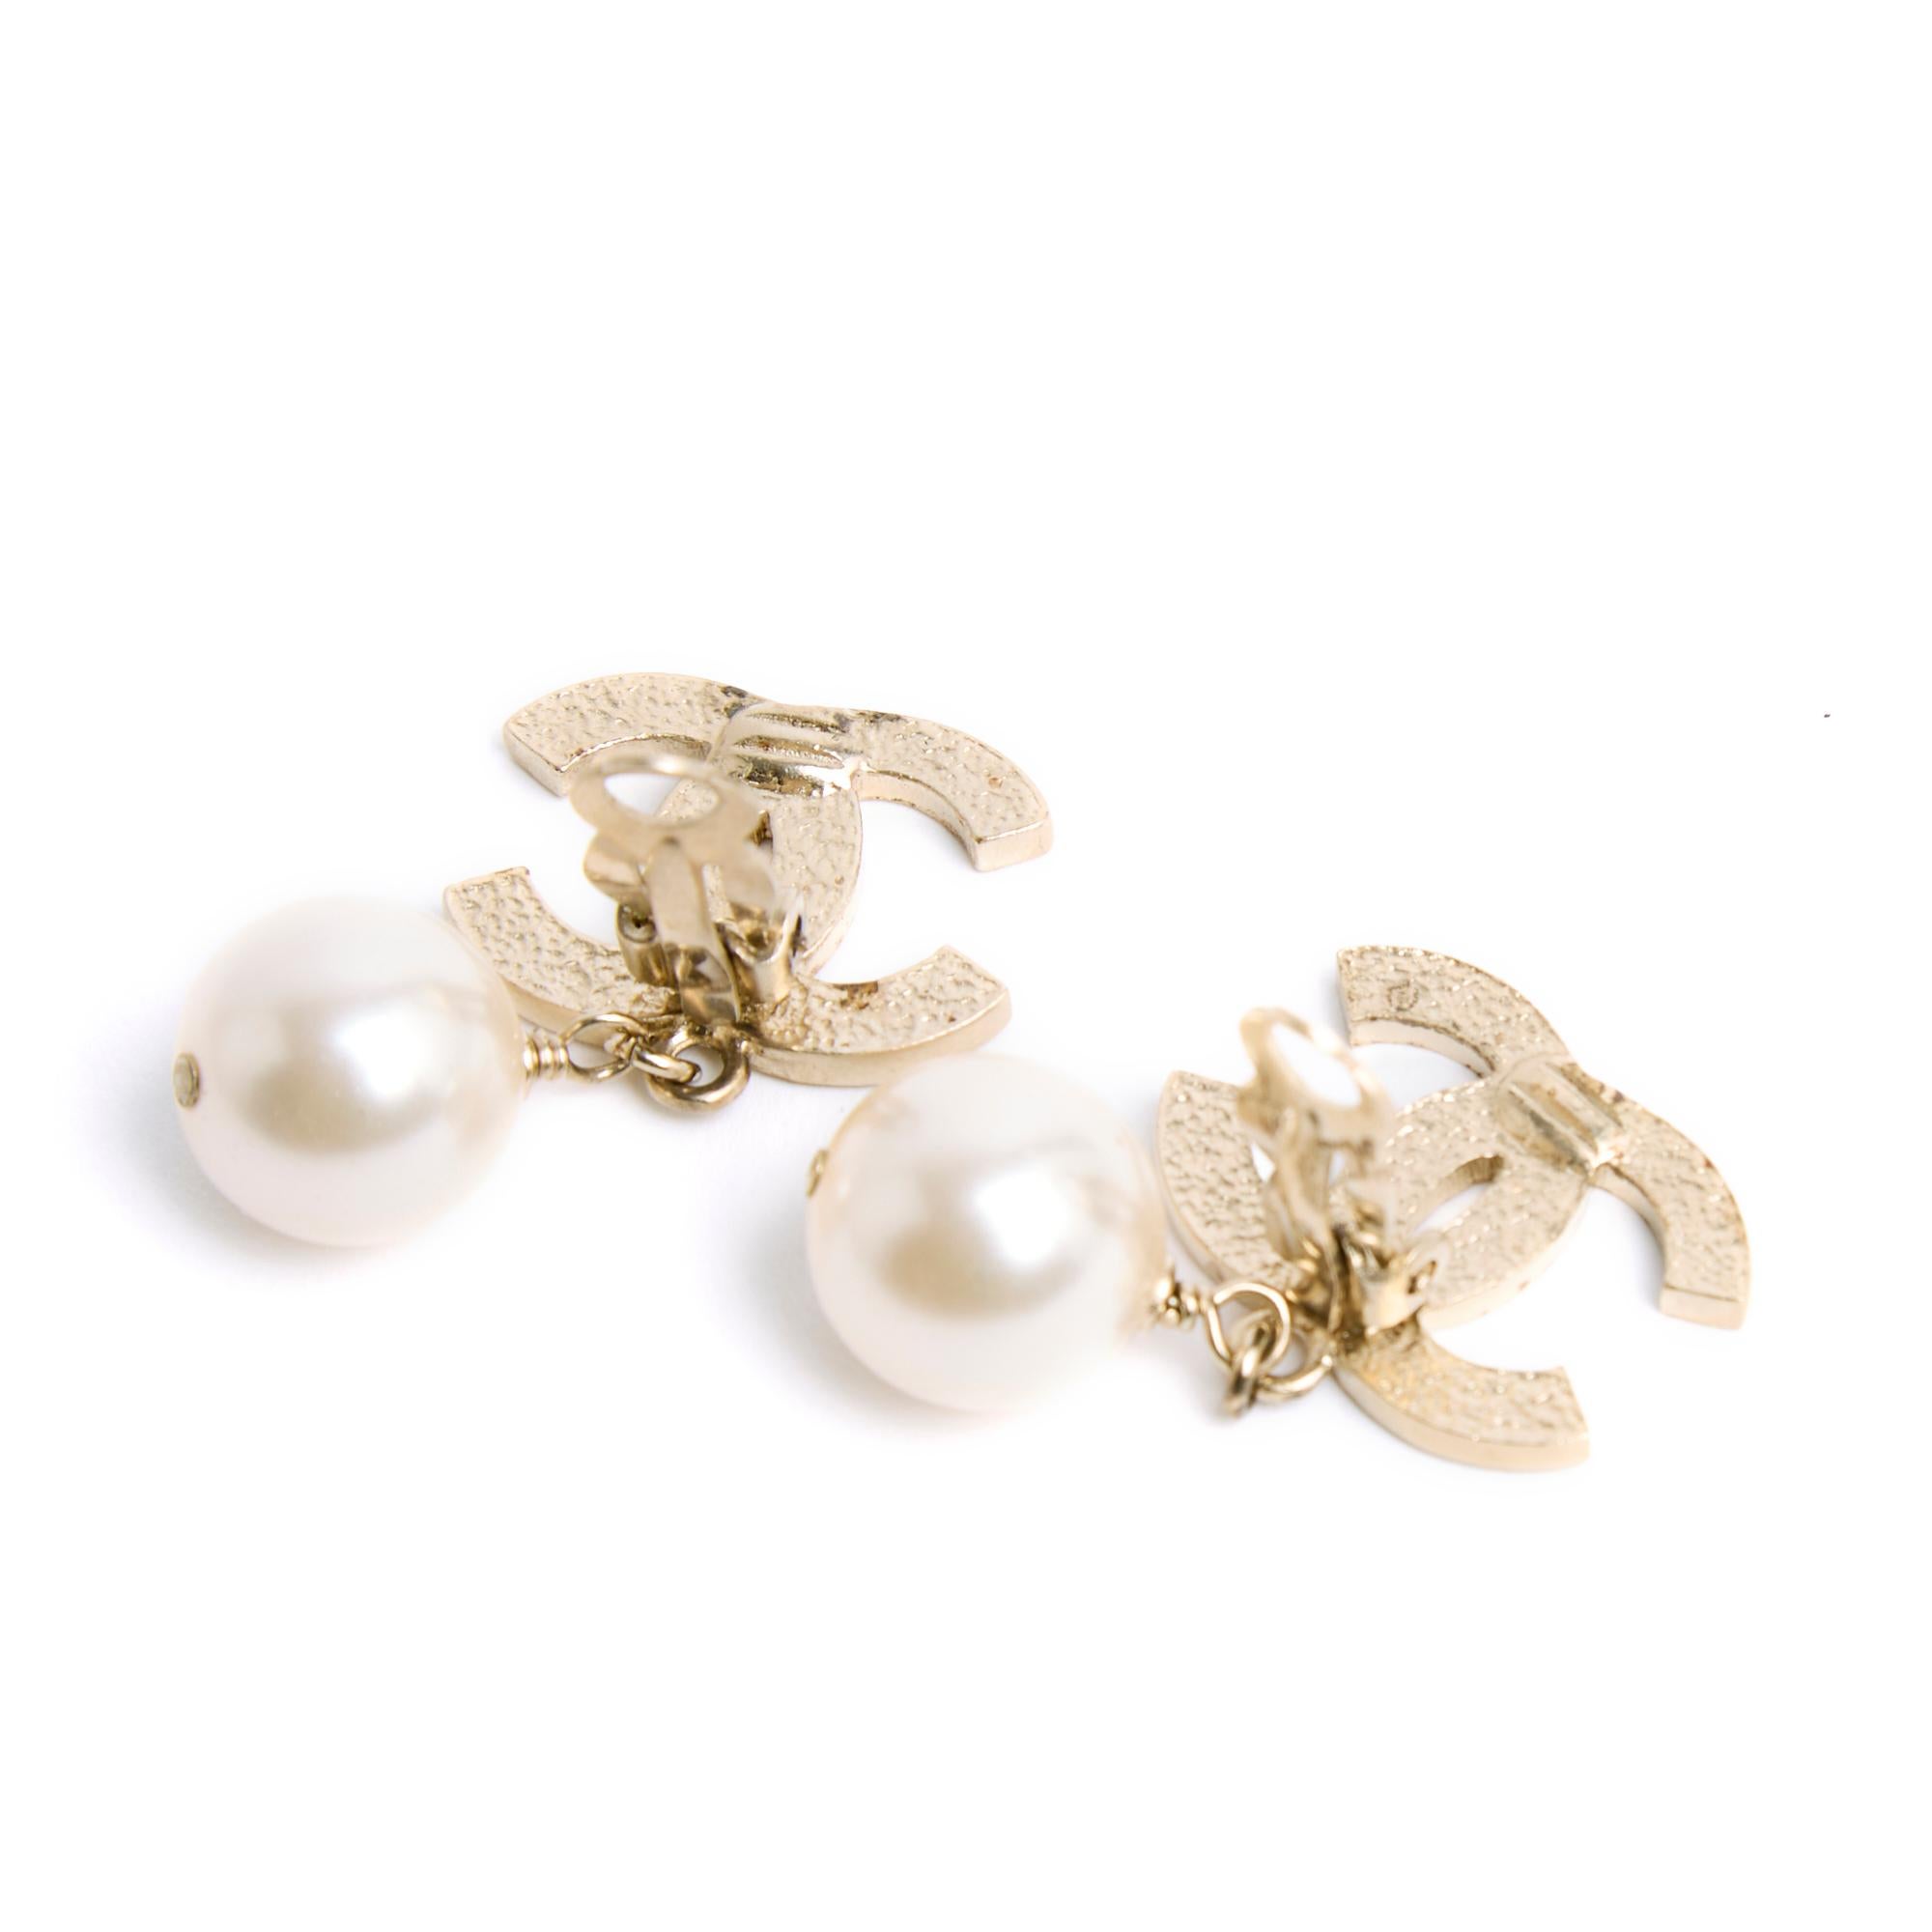 Boucles d'oreilles clip Chanel composées d'un large logo Chanel CC en métal doré finement matelassé et d'un pendentif en perles fantaisie rondes. Largeur 2 cm x hauteur 3,45 cm. Les boucles d'oreilles sont en très bon état, classique chic et